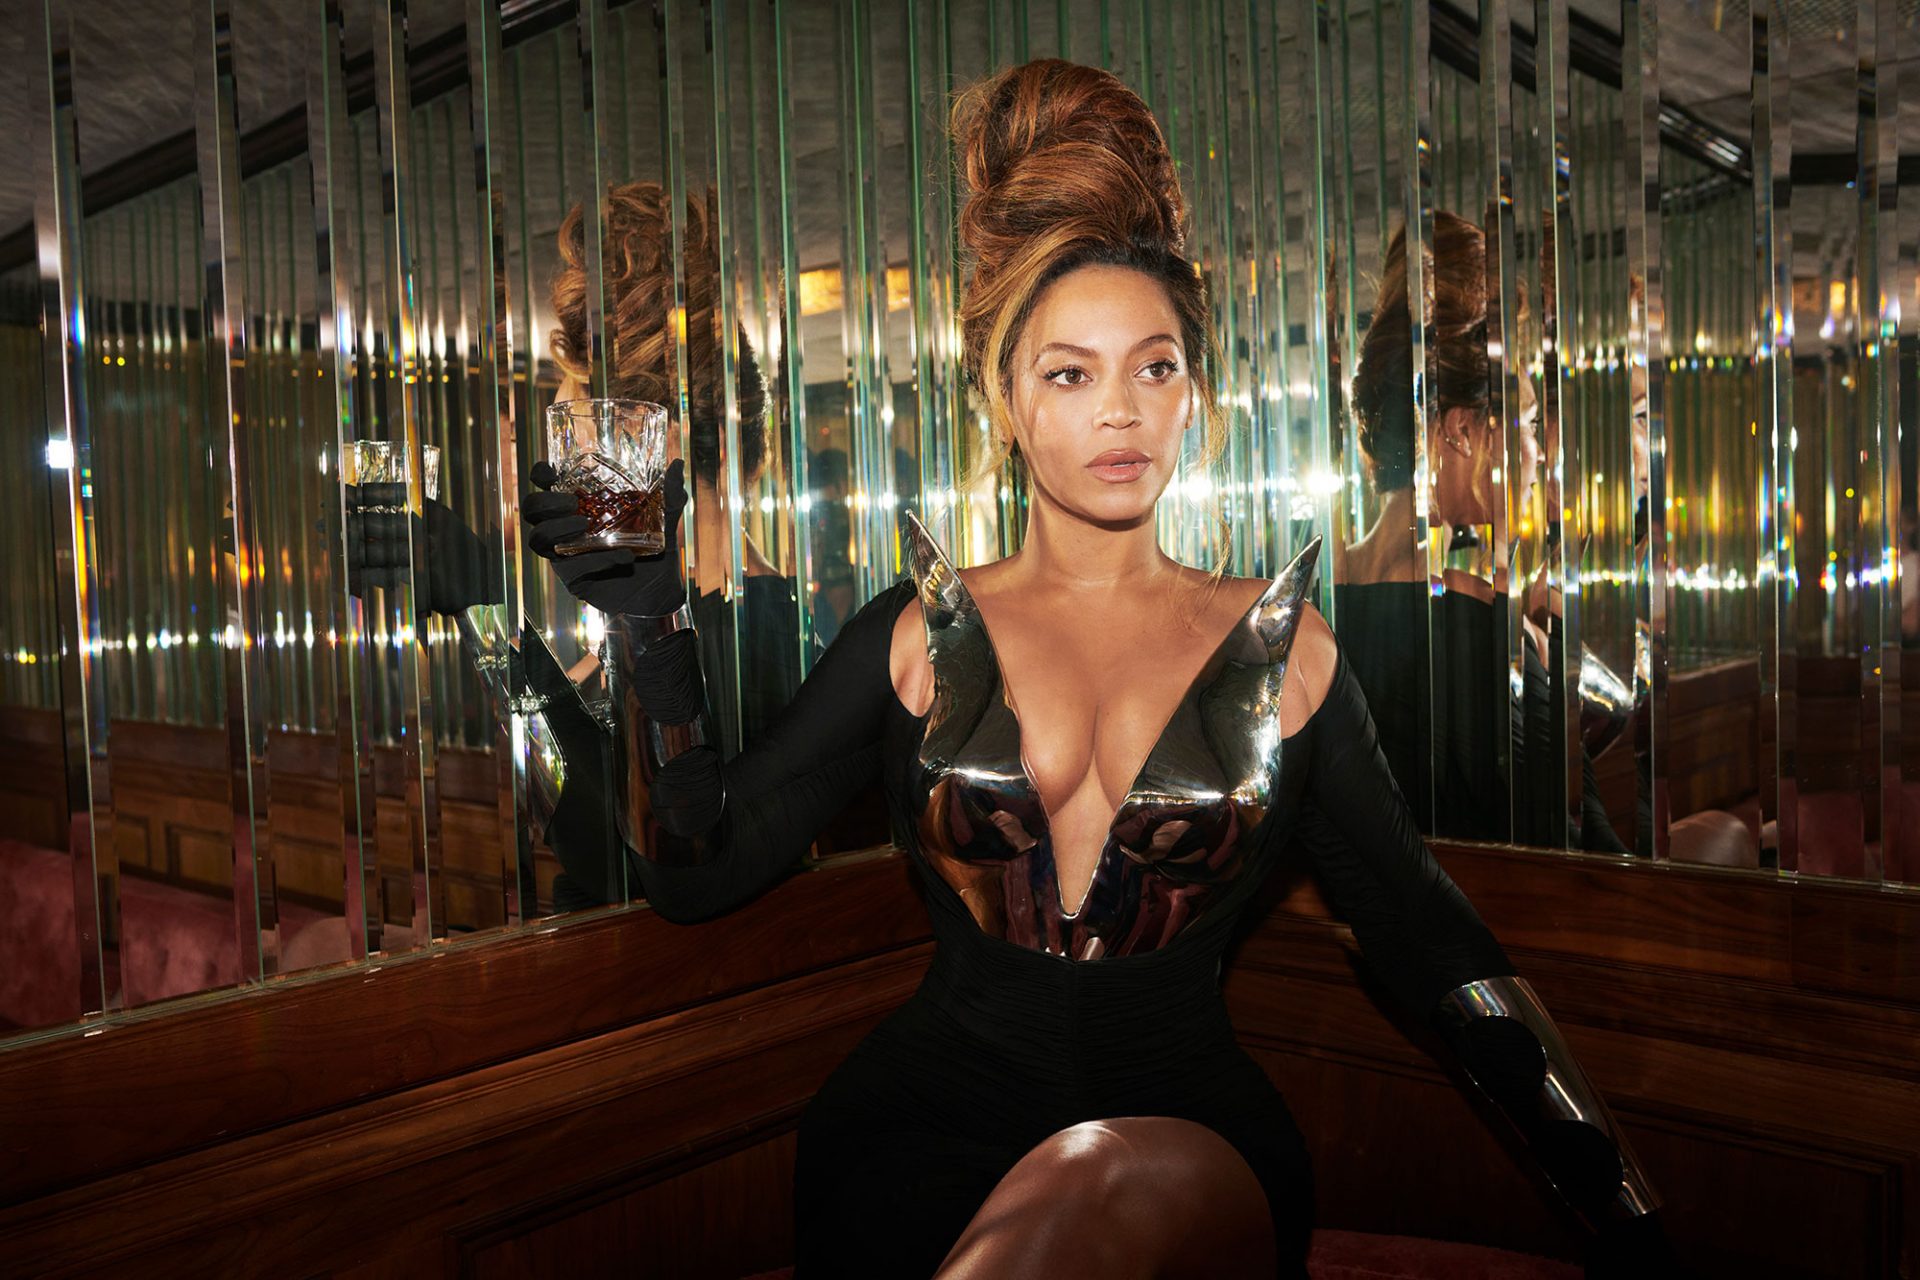 Beyoncé เตรียมเปลี่ยนเนื้อร้องเพลง “Heated” หลังโดนวิจารณ์ว่ามีการใช้คำที่ไม่เหมาะสมต่อผู้พิการ